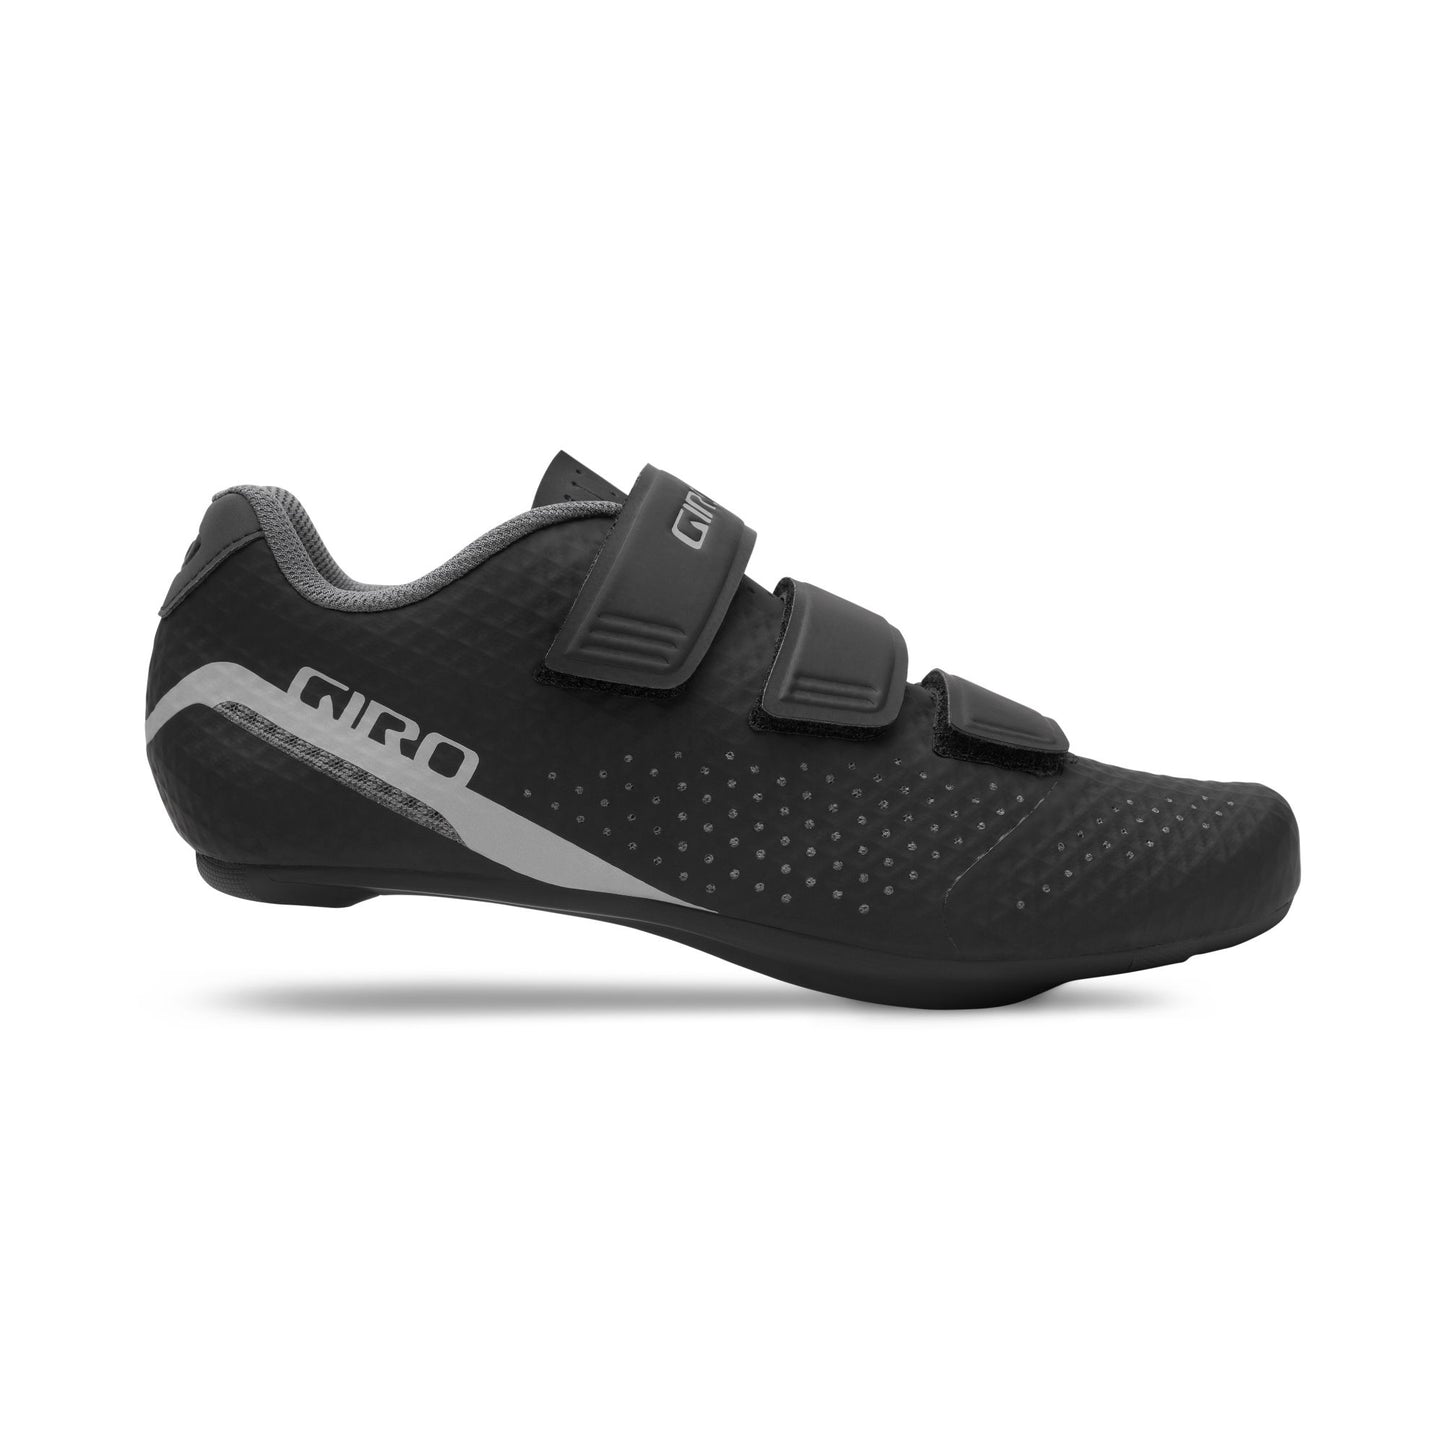 Giro Women's Stylus Shoe Black Bike Shoes